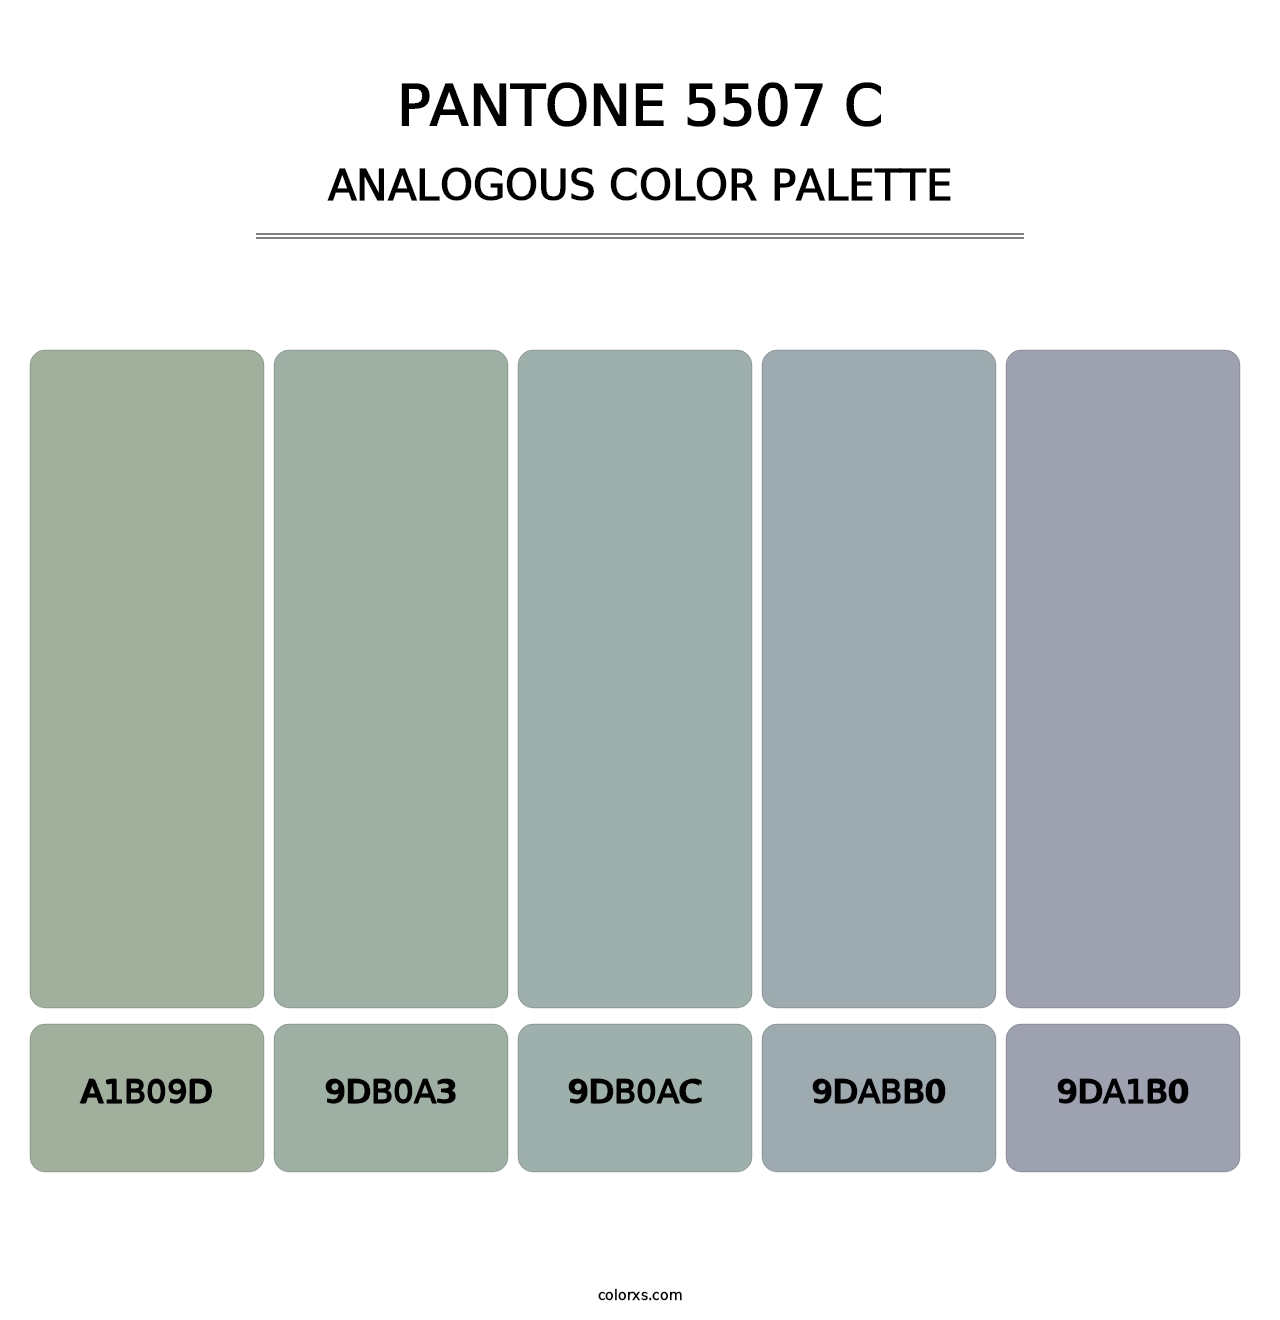 PANTONE 5507 C - Analogous Color Palette